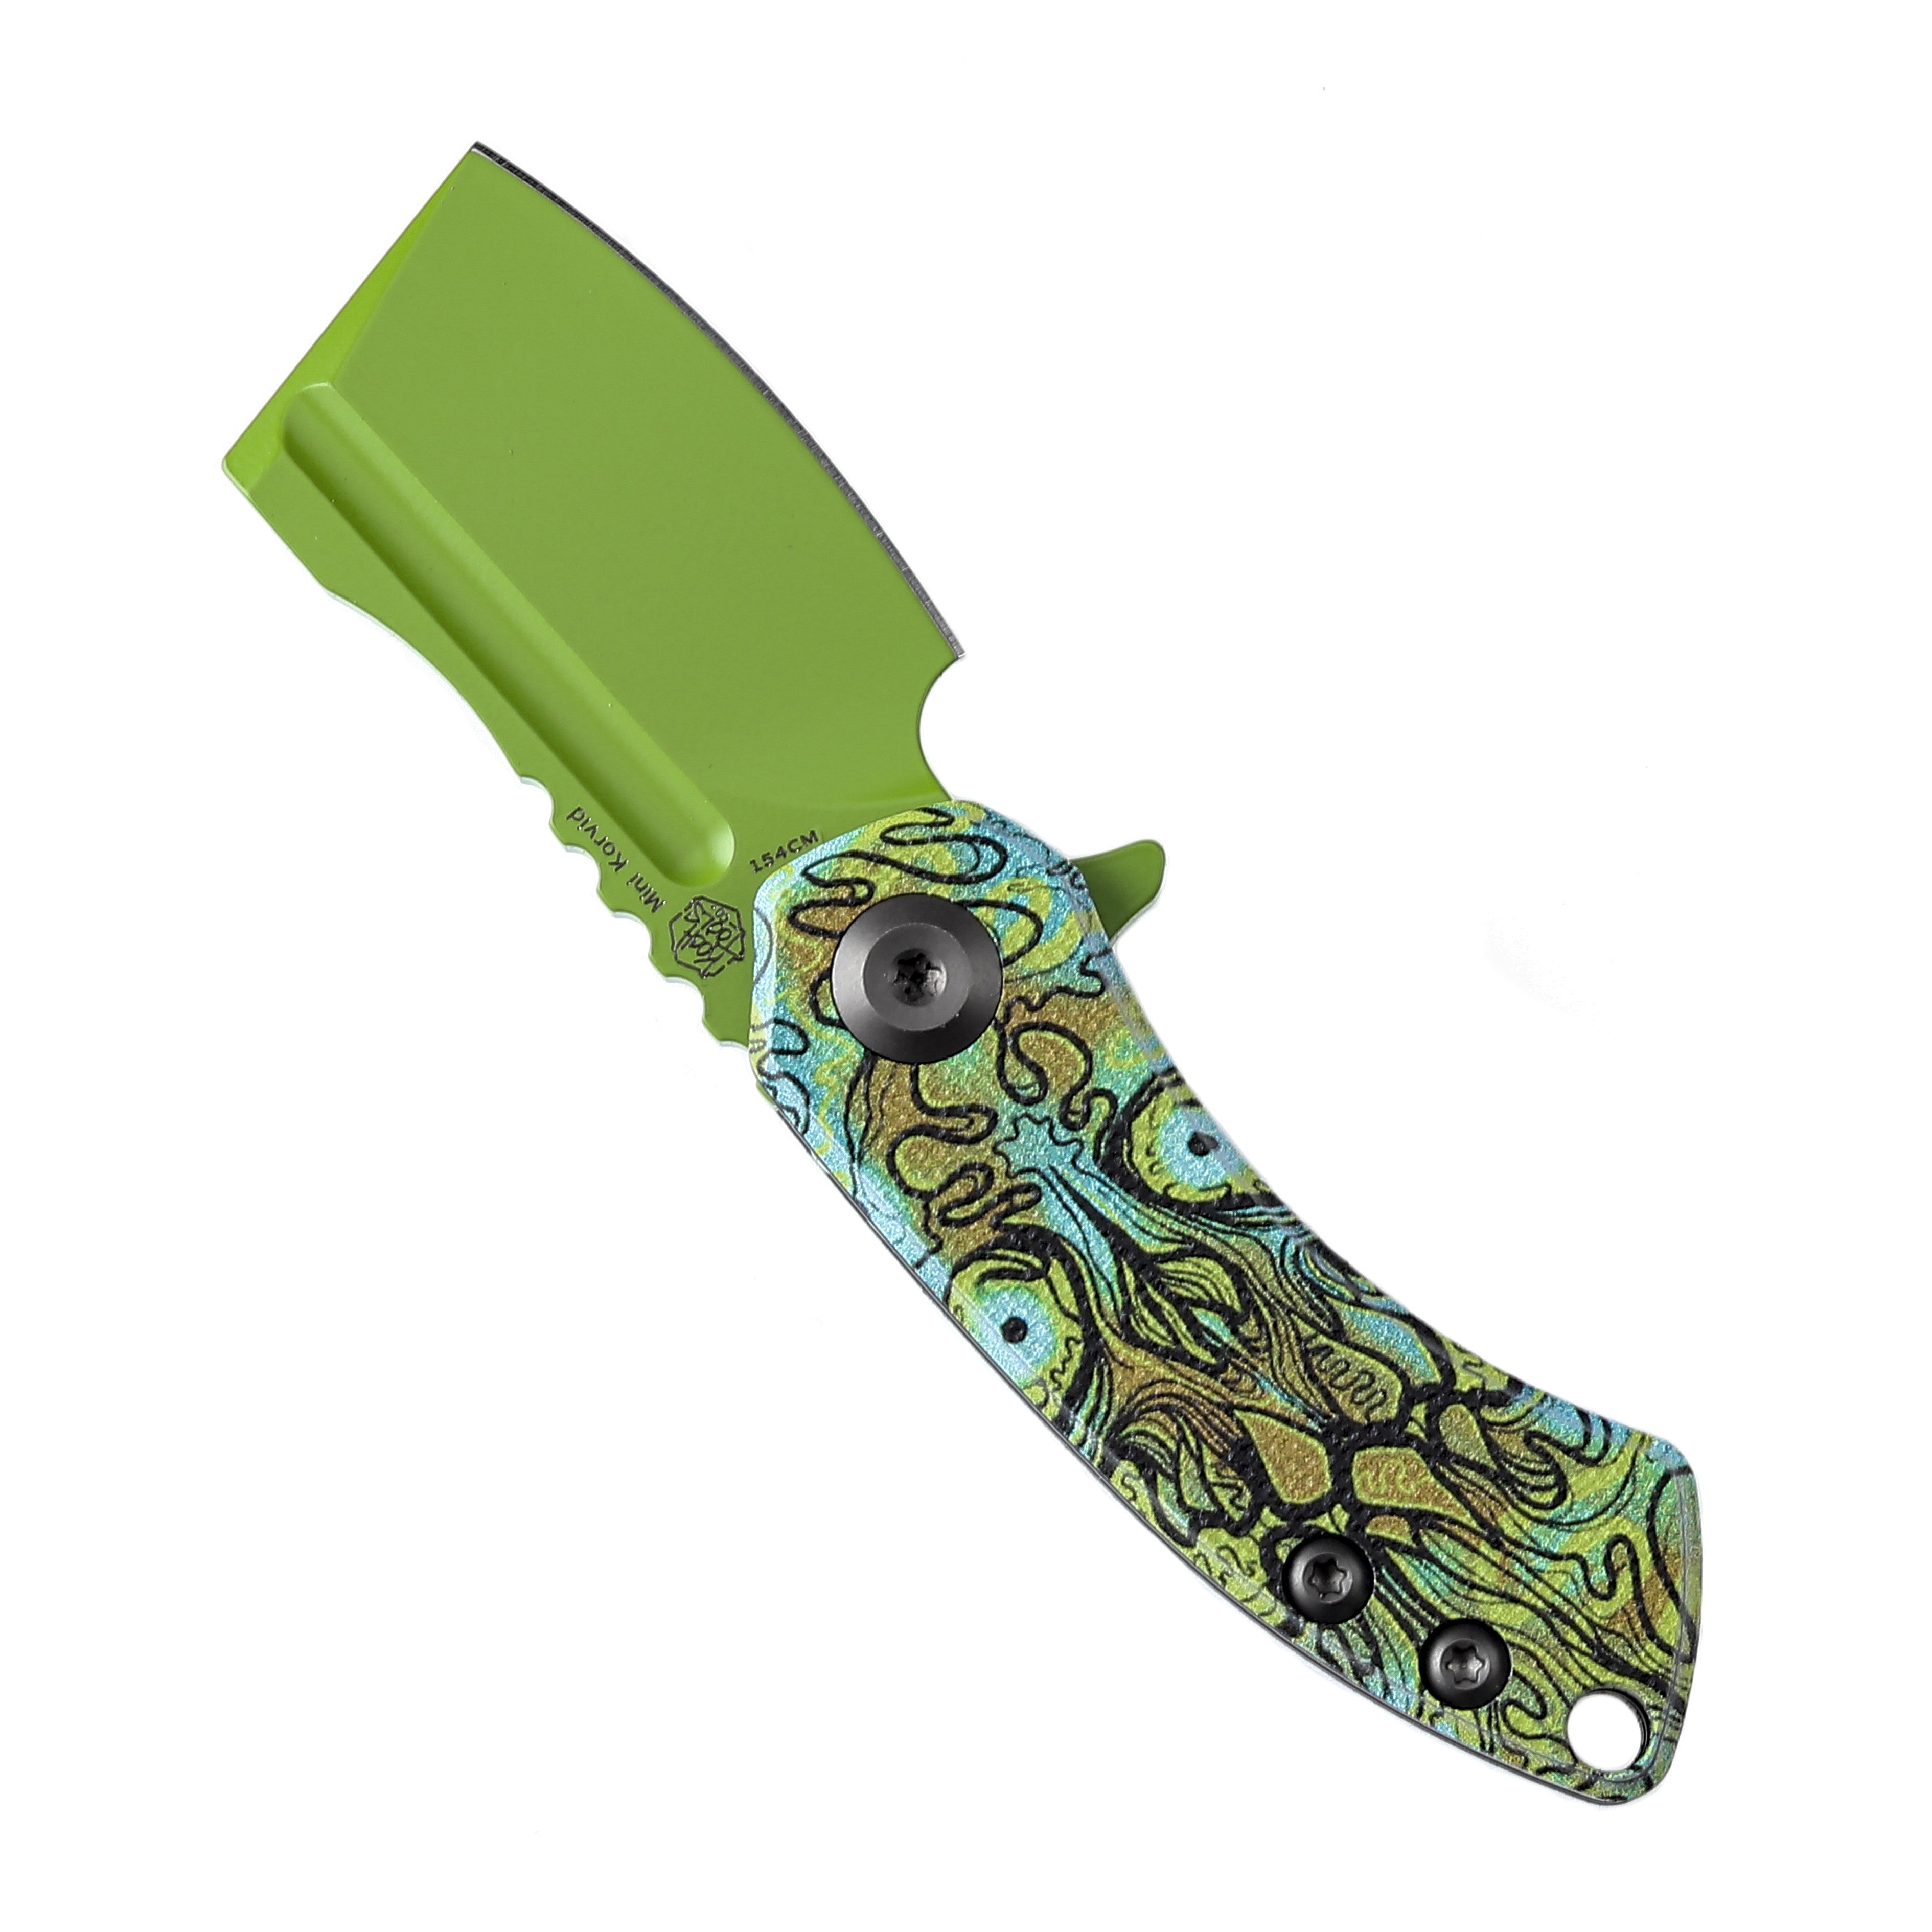 Kansept 刀具 T3030B2 迷你 Korvid 绿色 154 厘米刀片 Undead 印花绿色 G10 手柄内衬锁 Edc 刀